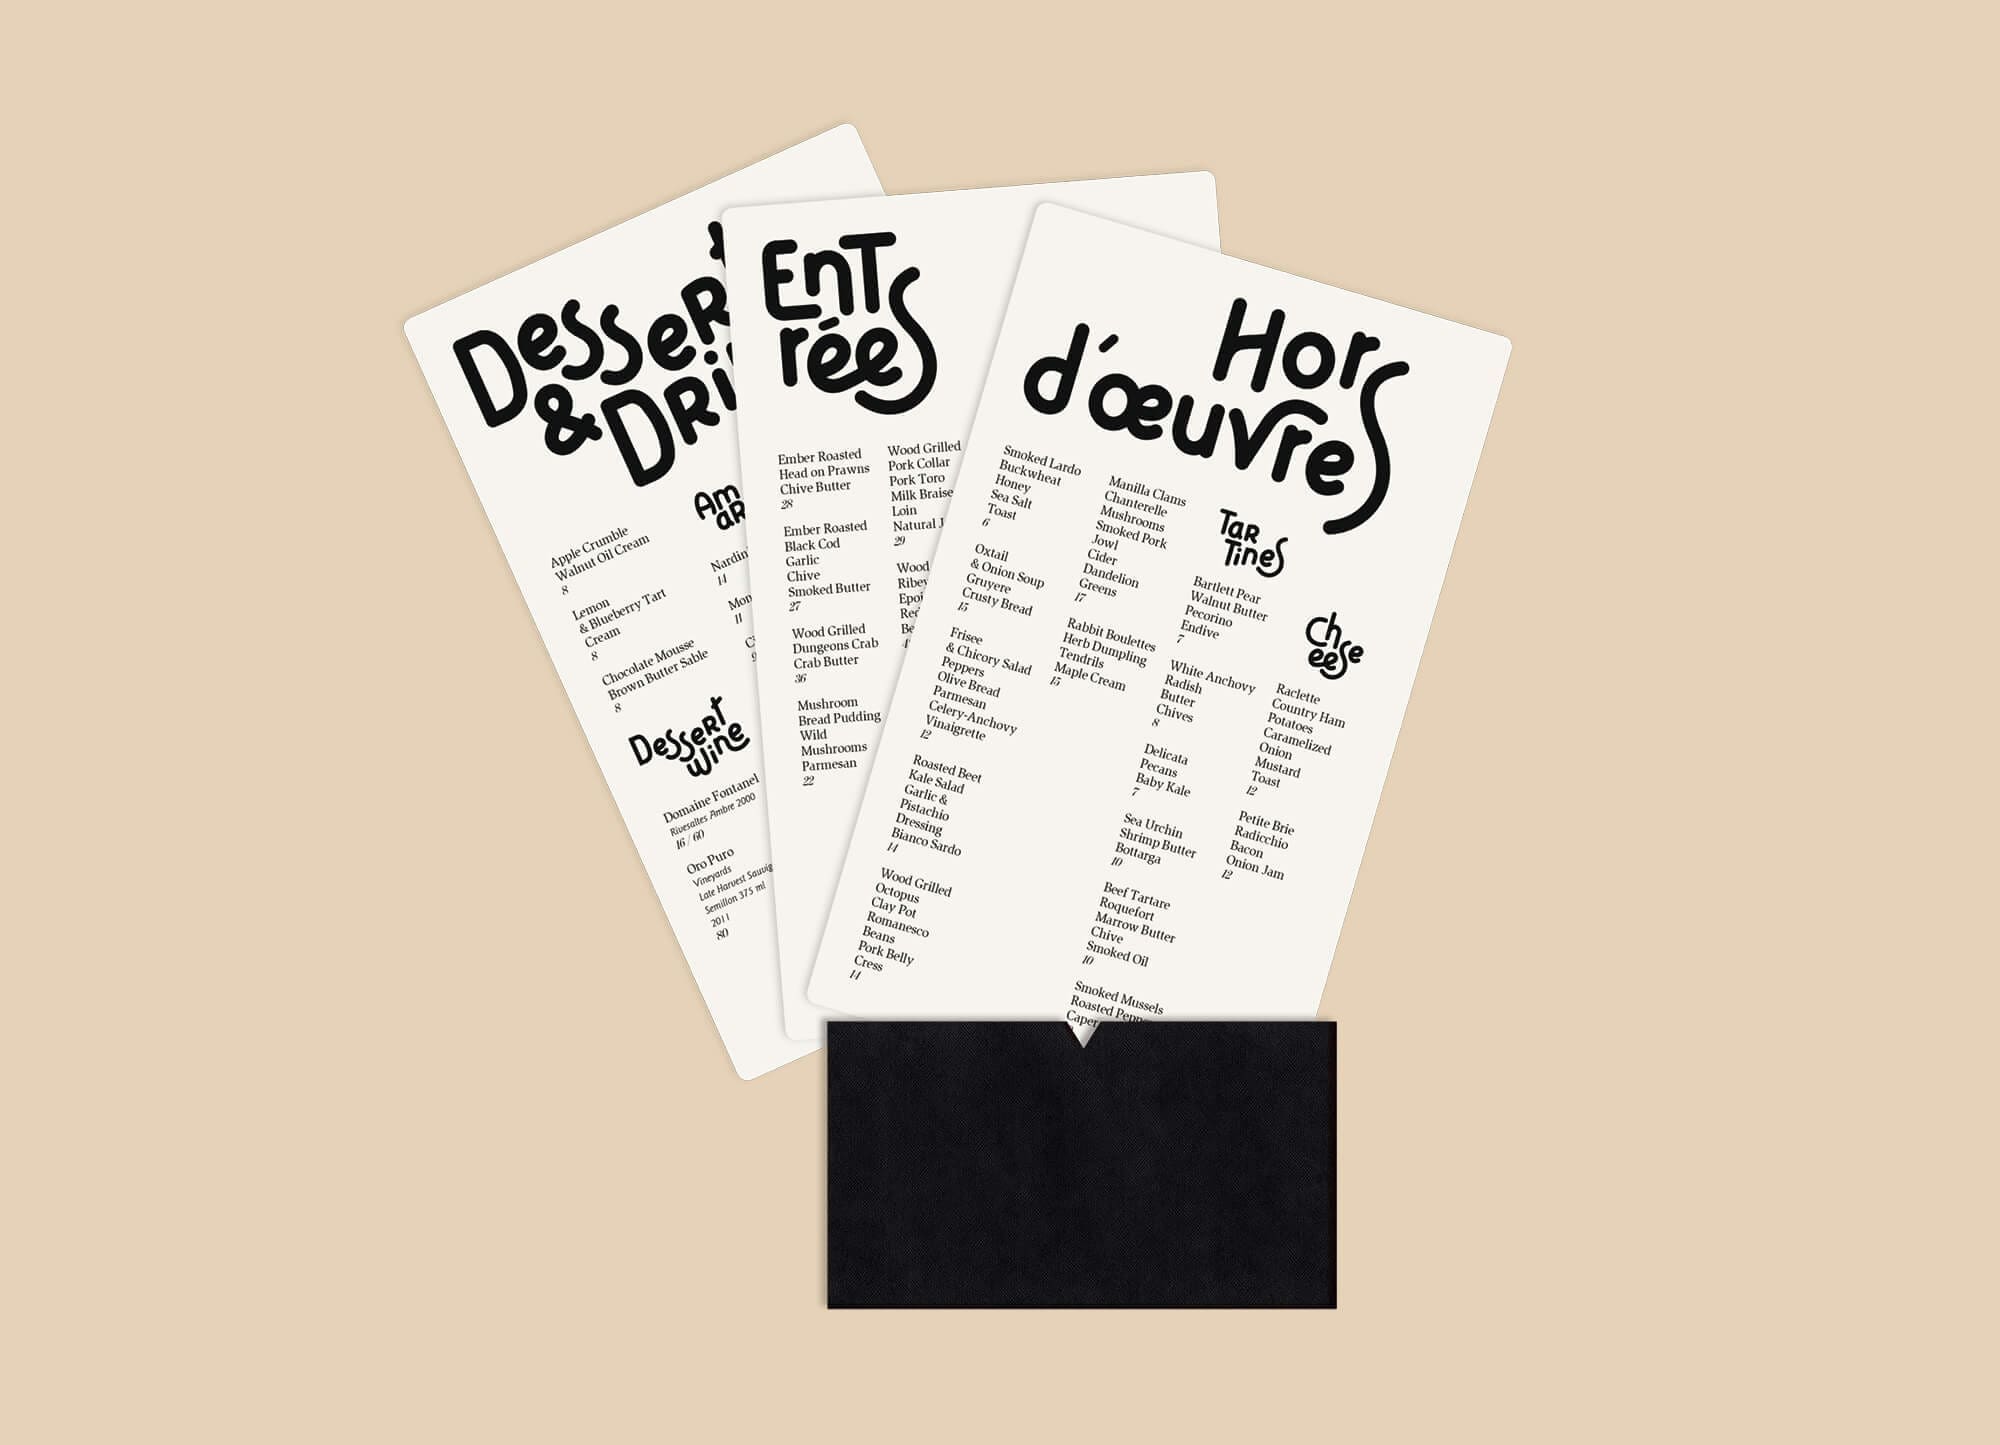 Les cartes du menu du restaurant cadet aux Etats Unis, typographie expressive dessiné par IchetKar